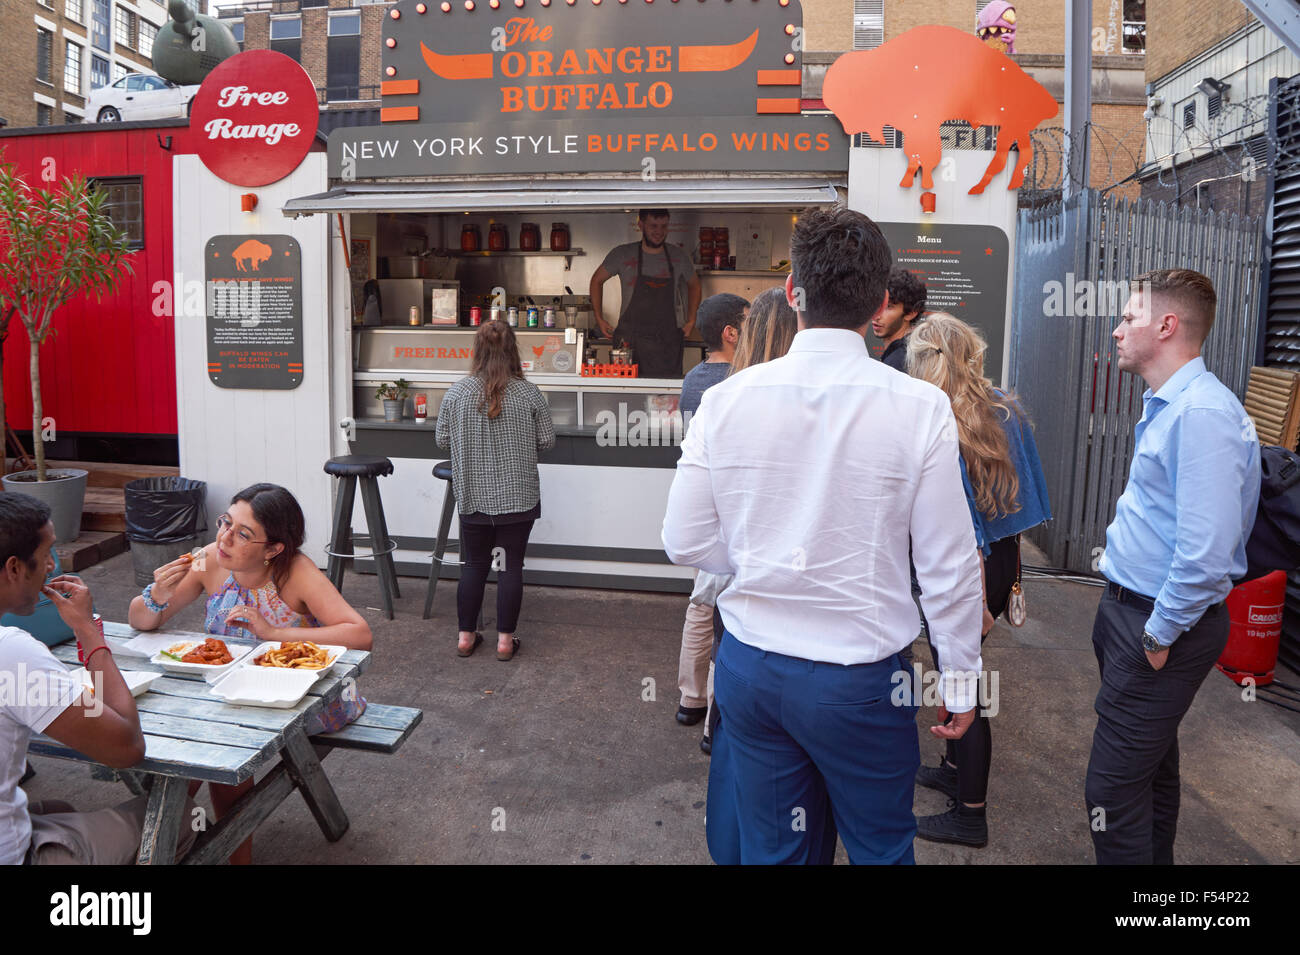 Les gens achètent des aliments en petits eatery à Shoreditch, London England Royaume-Uni UK Banque D'Images